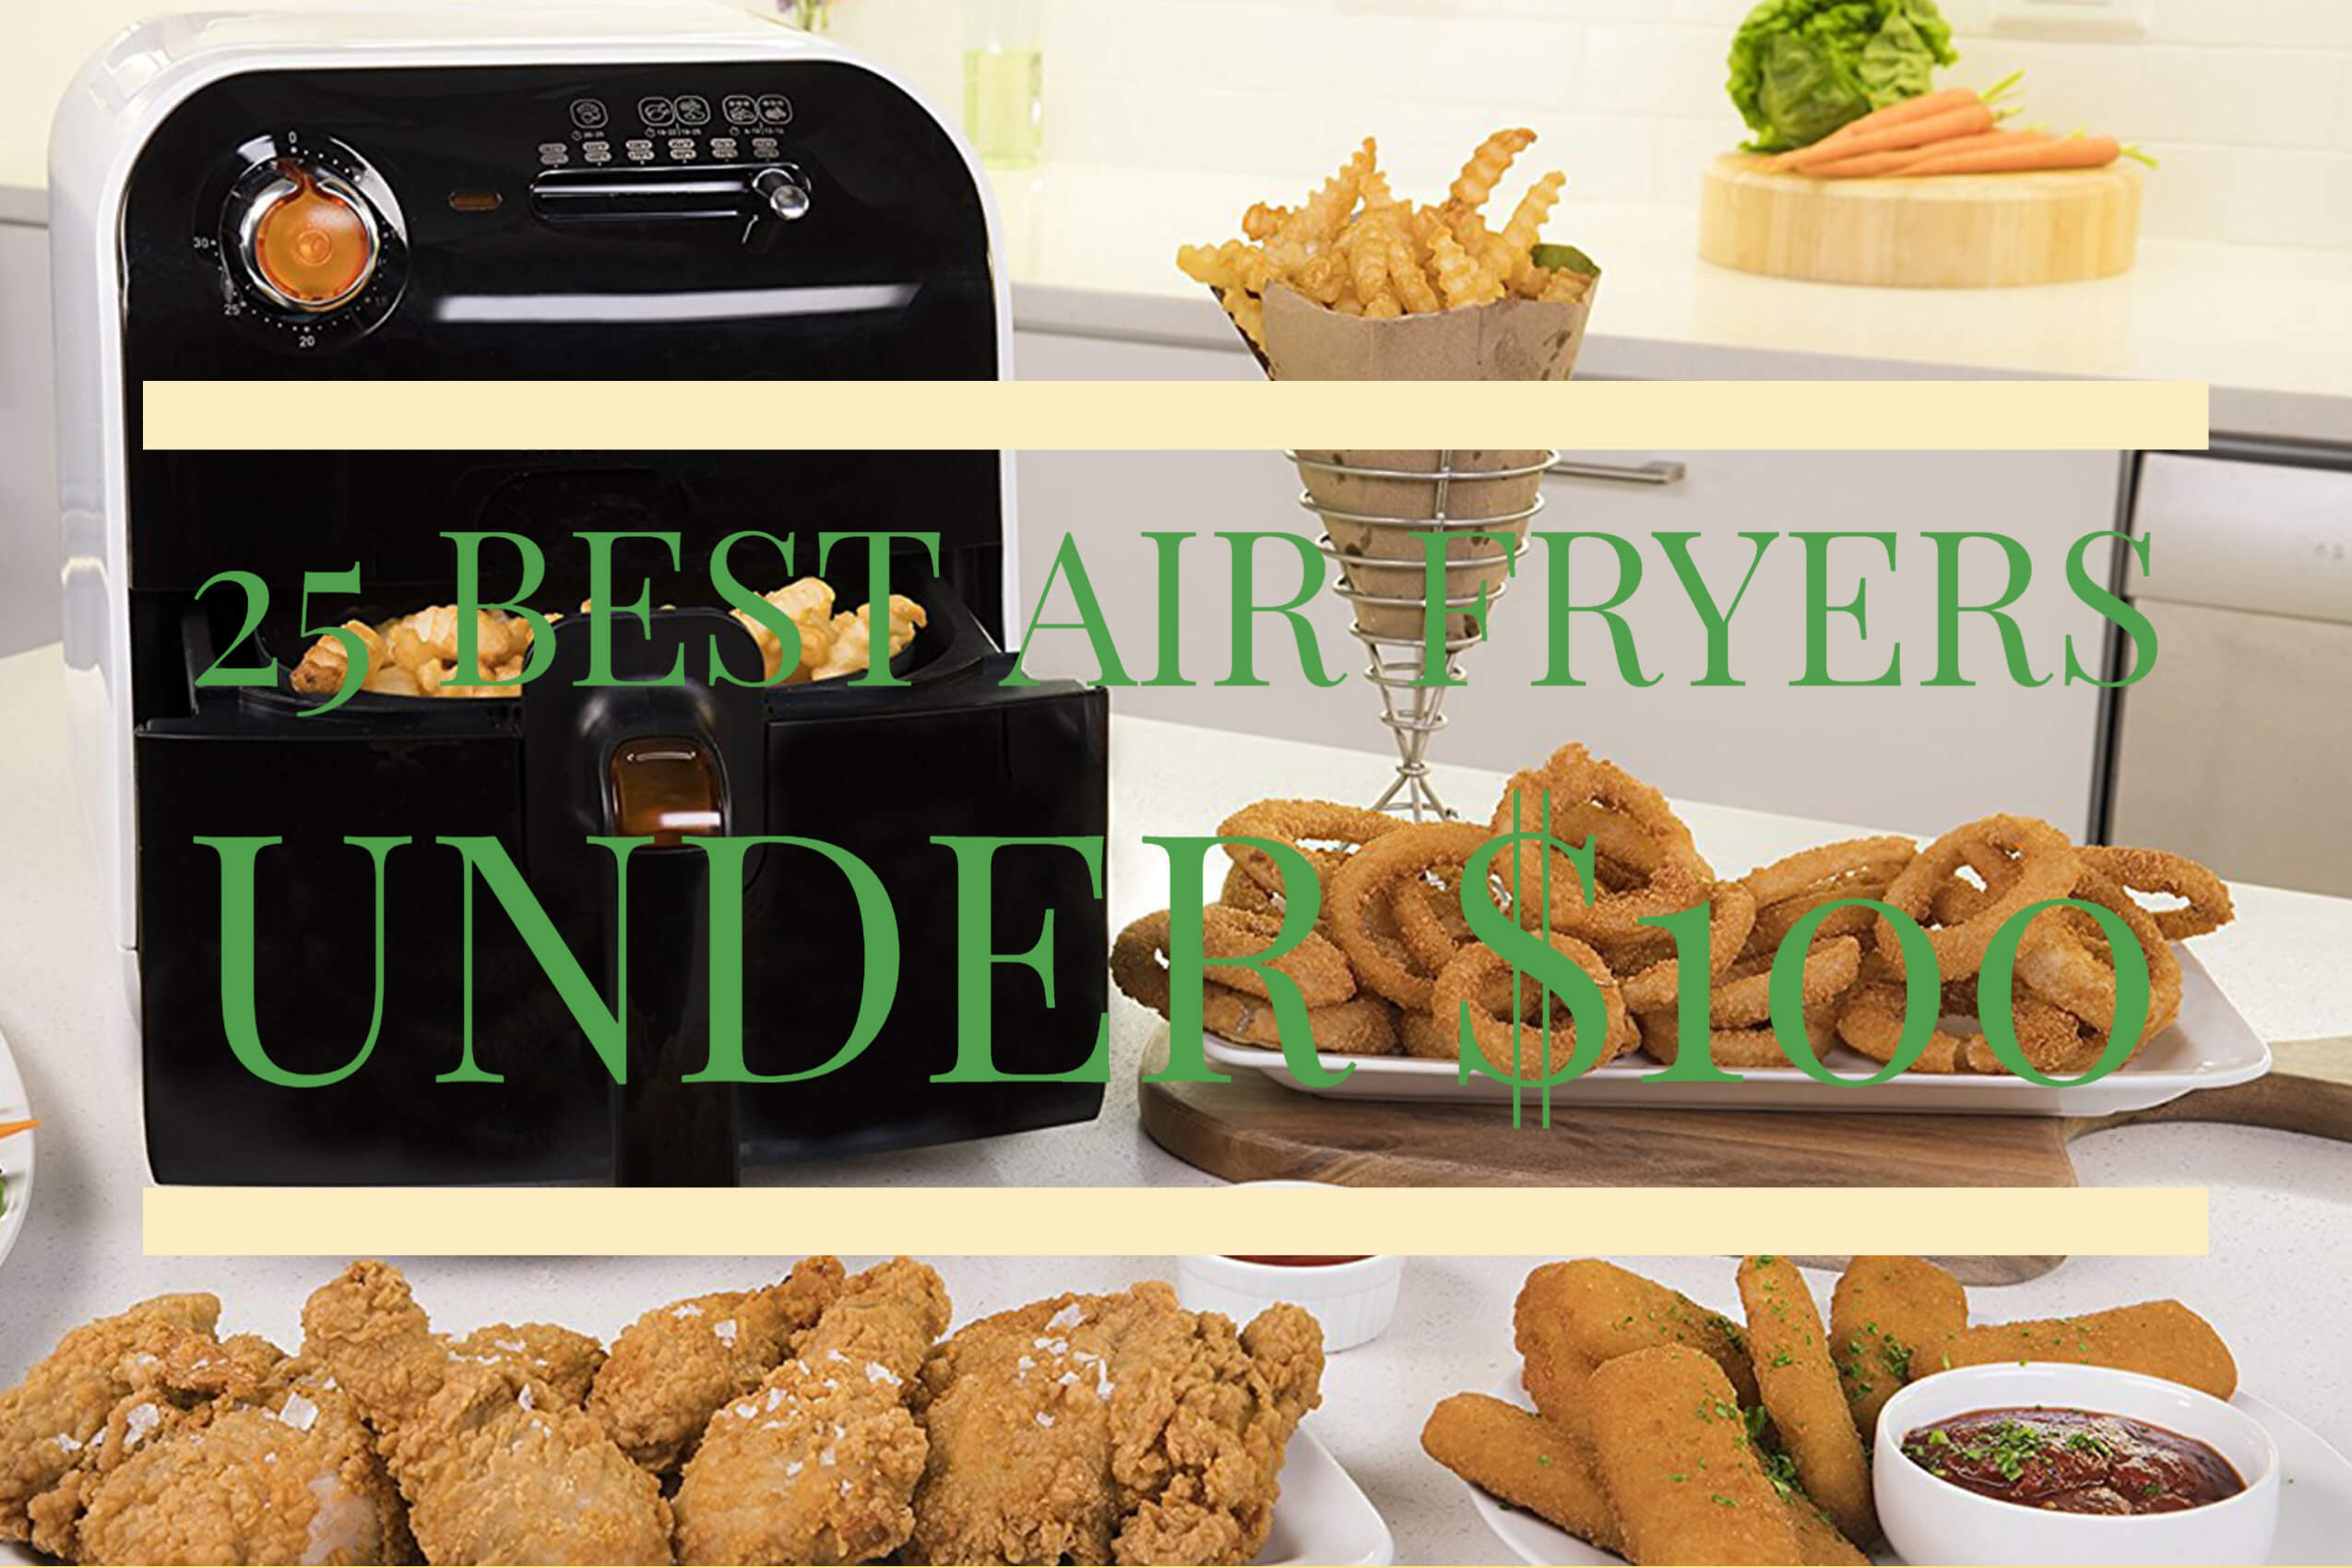 25 Best Air Fryers Under $100